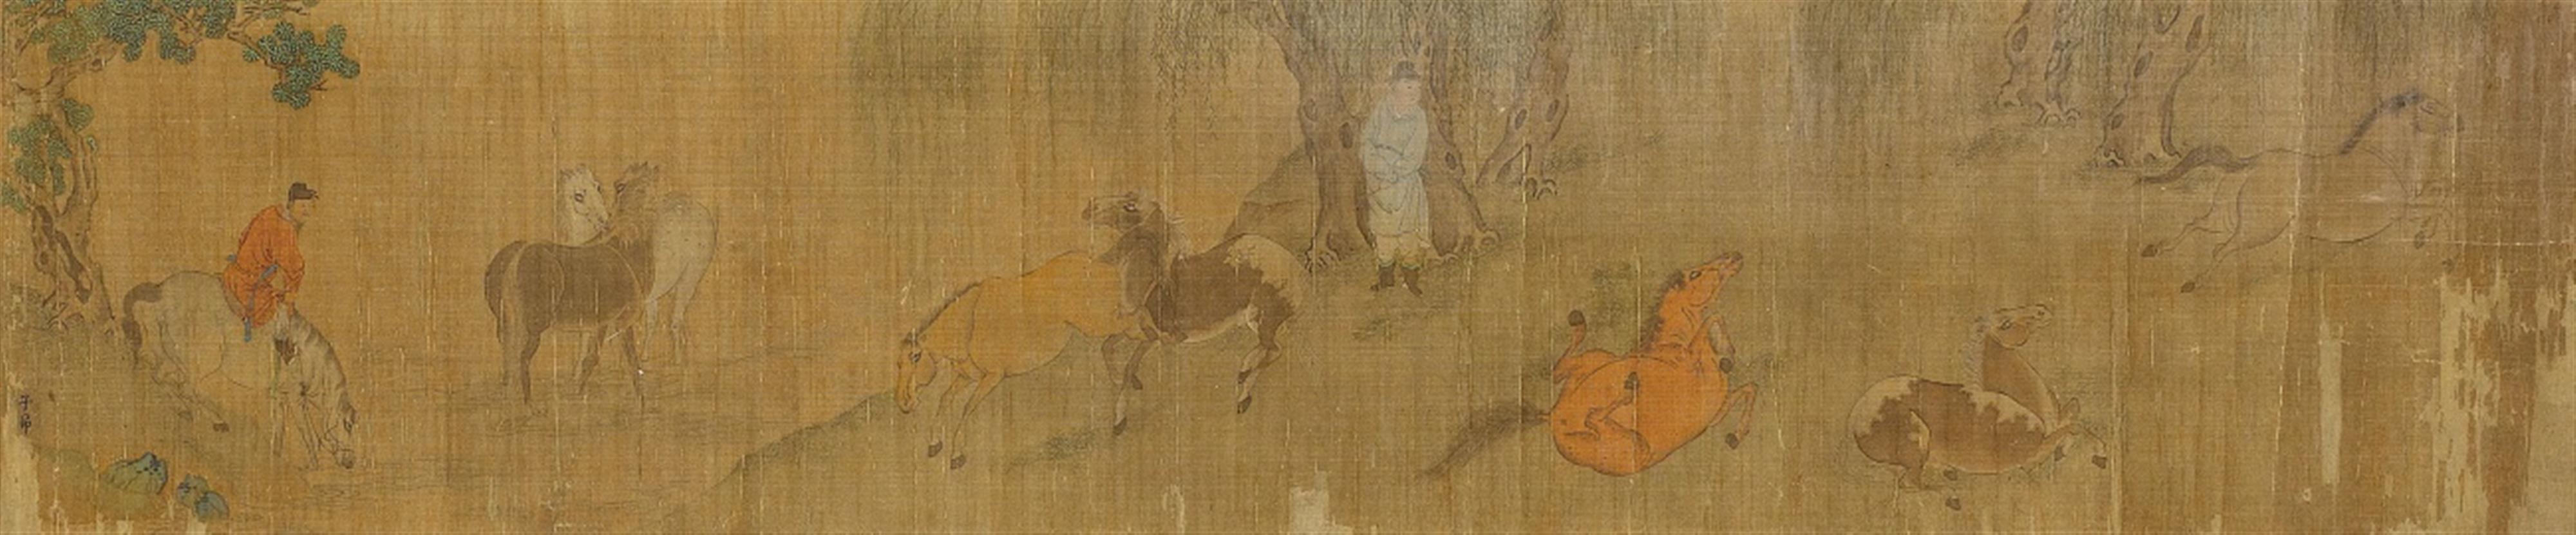 Zhao Mengfu, in der Art. Qing-Zeit - Die Acht Pferde des Königs Mu (Mu wang). Querrolle. Tusche und Farben auf Seide. Bez.: Zi'ang. - image-1